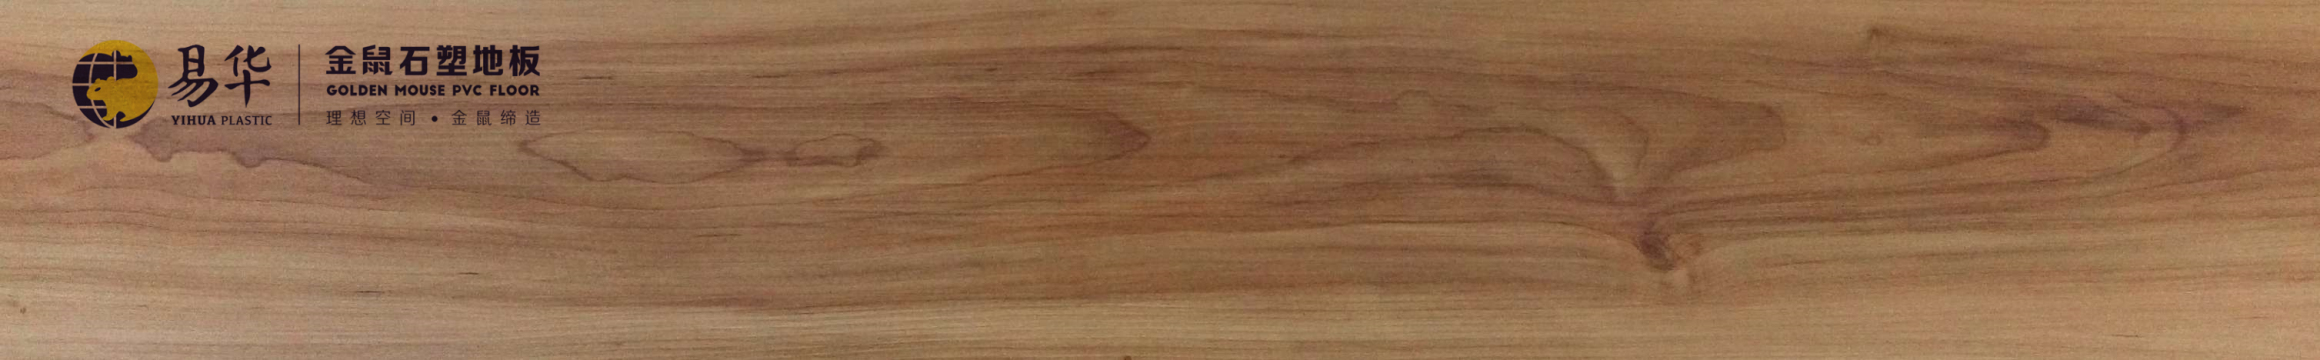 金鼠PVC地板木纹WM11